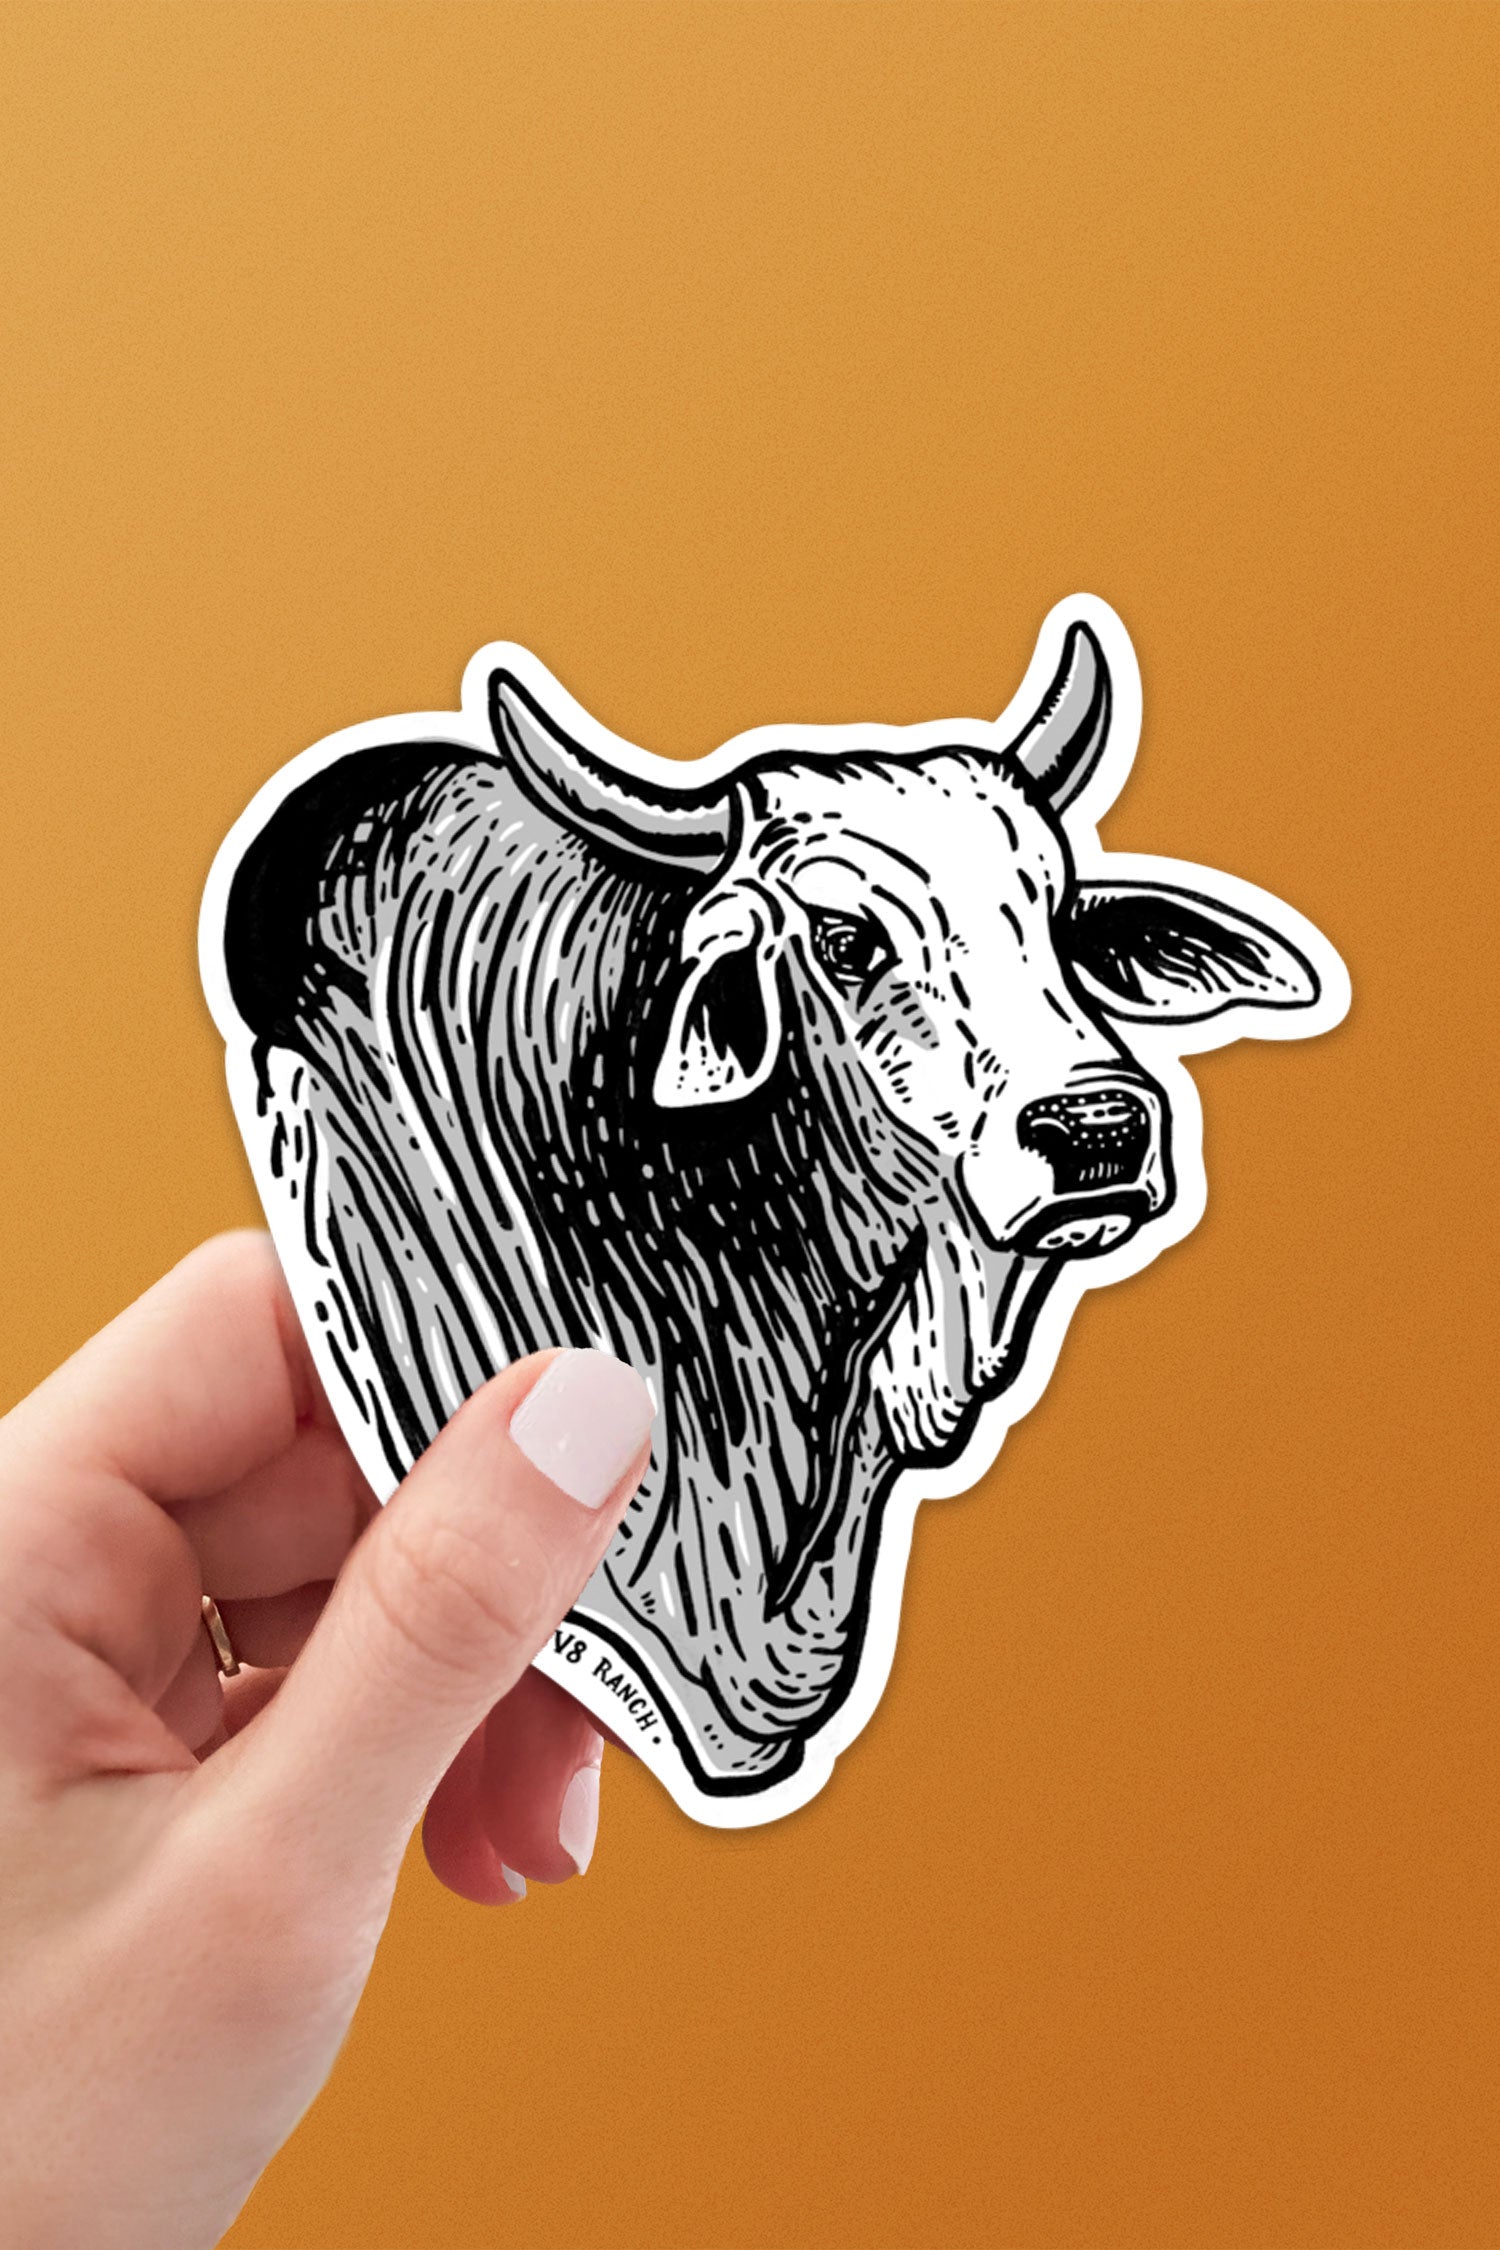 Sticker Bull Just Good Stickers, No Bull! Shop Custom Stickers